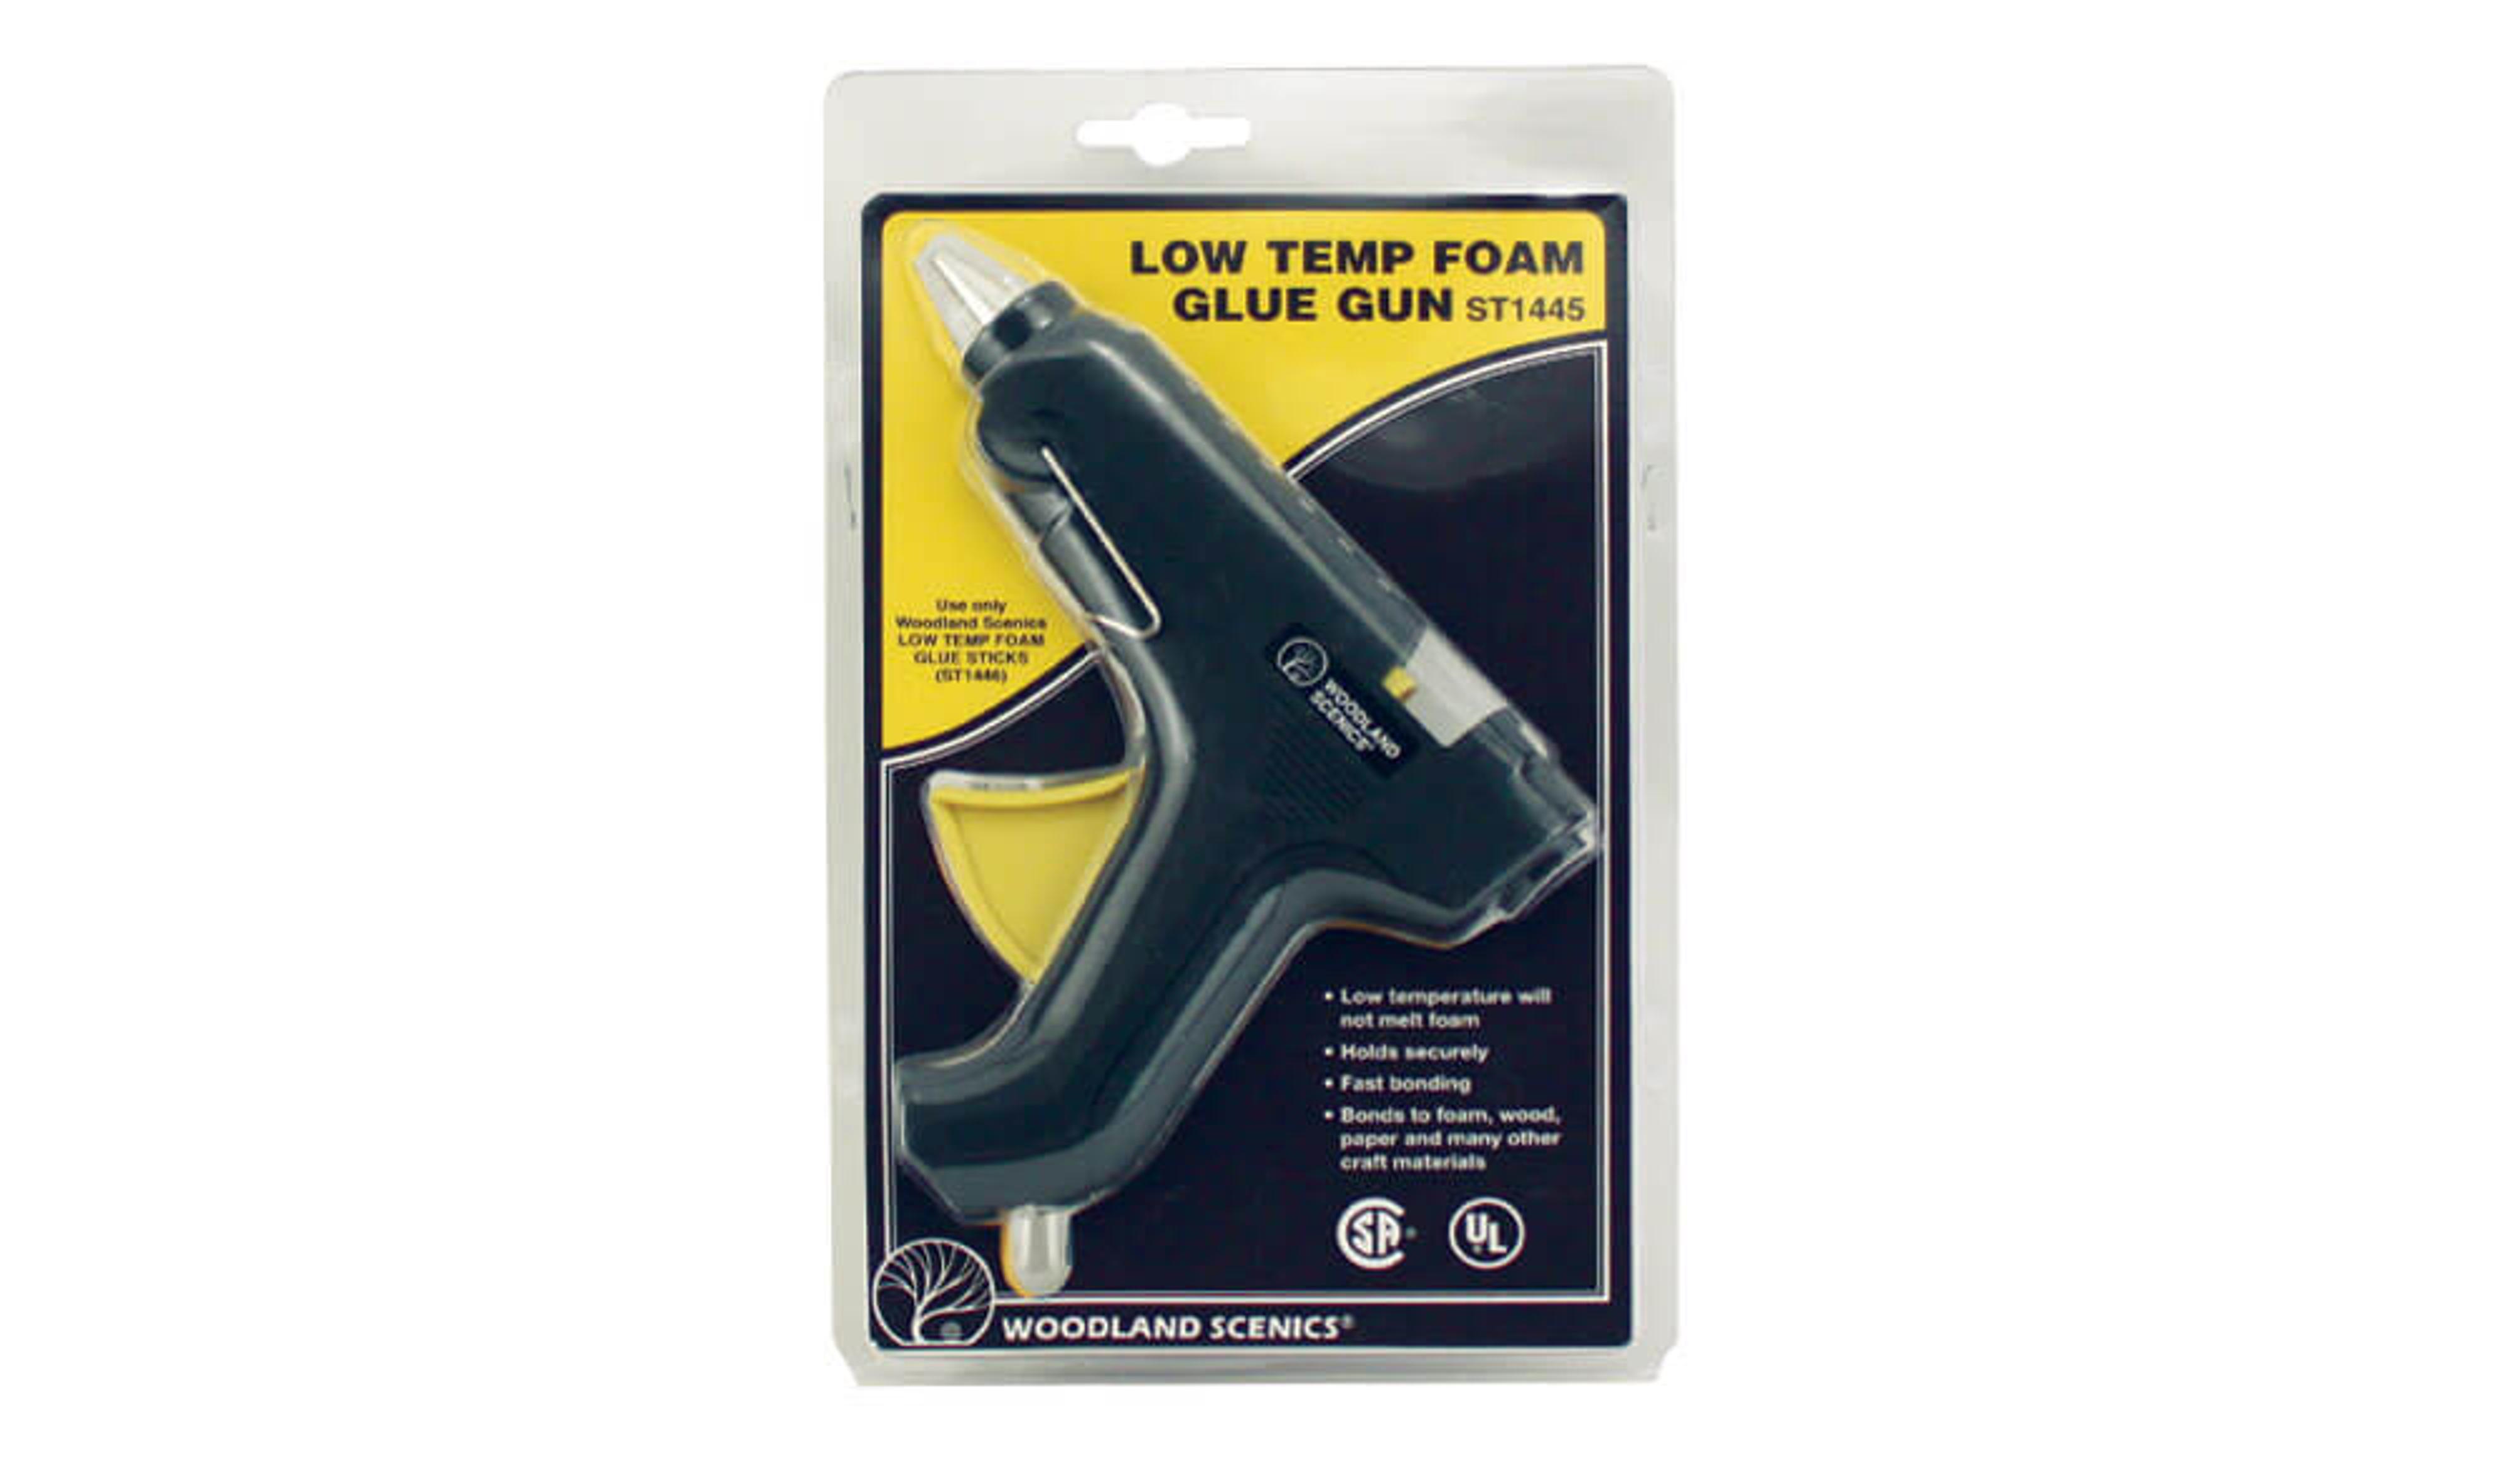 Low Temp Foam Glue Gun